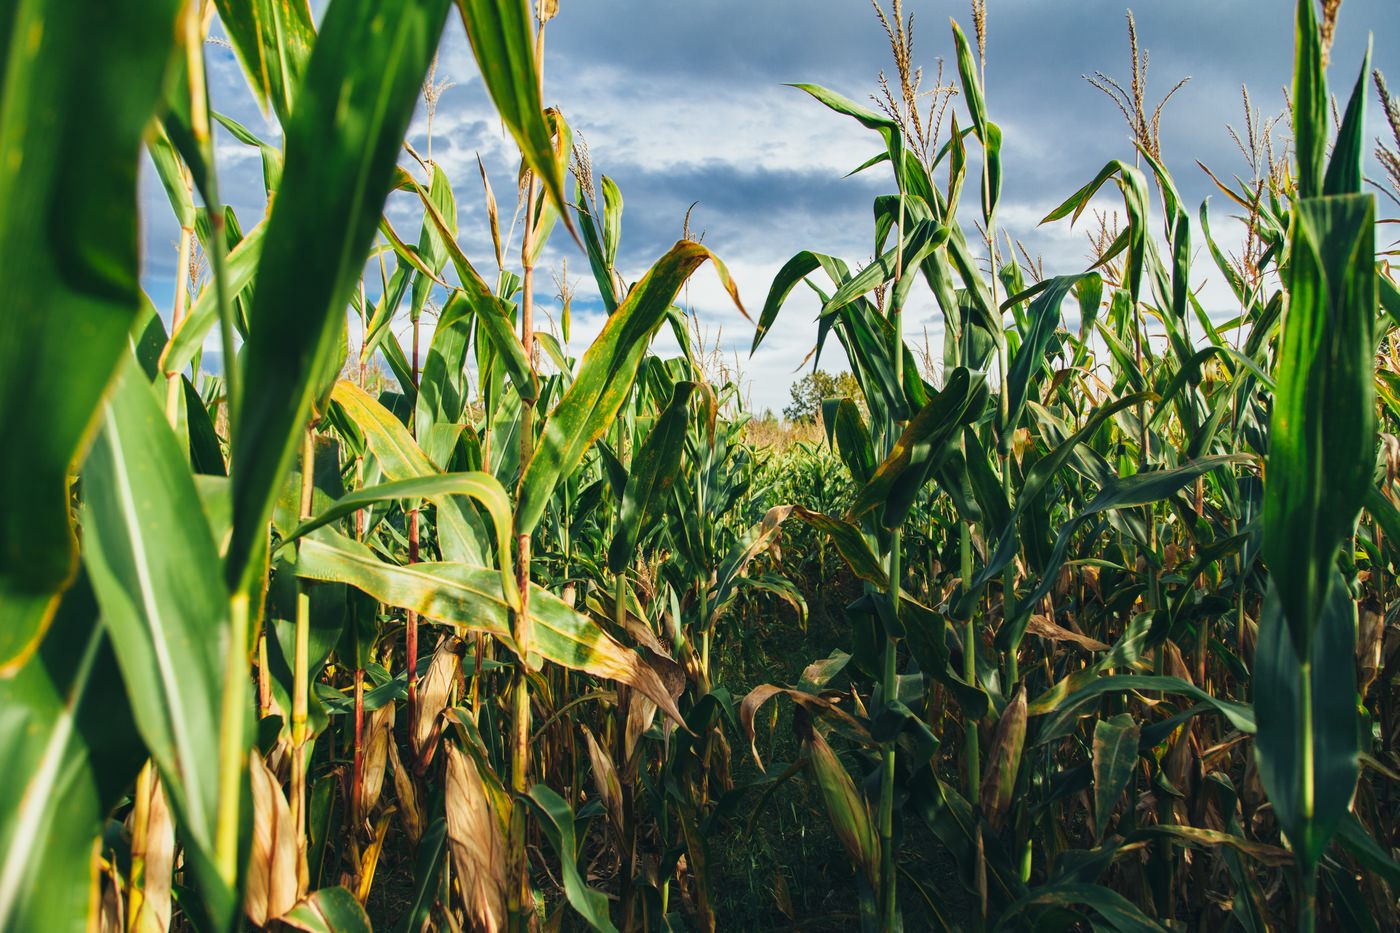 Washington State Corn Maze